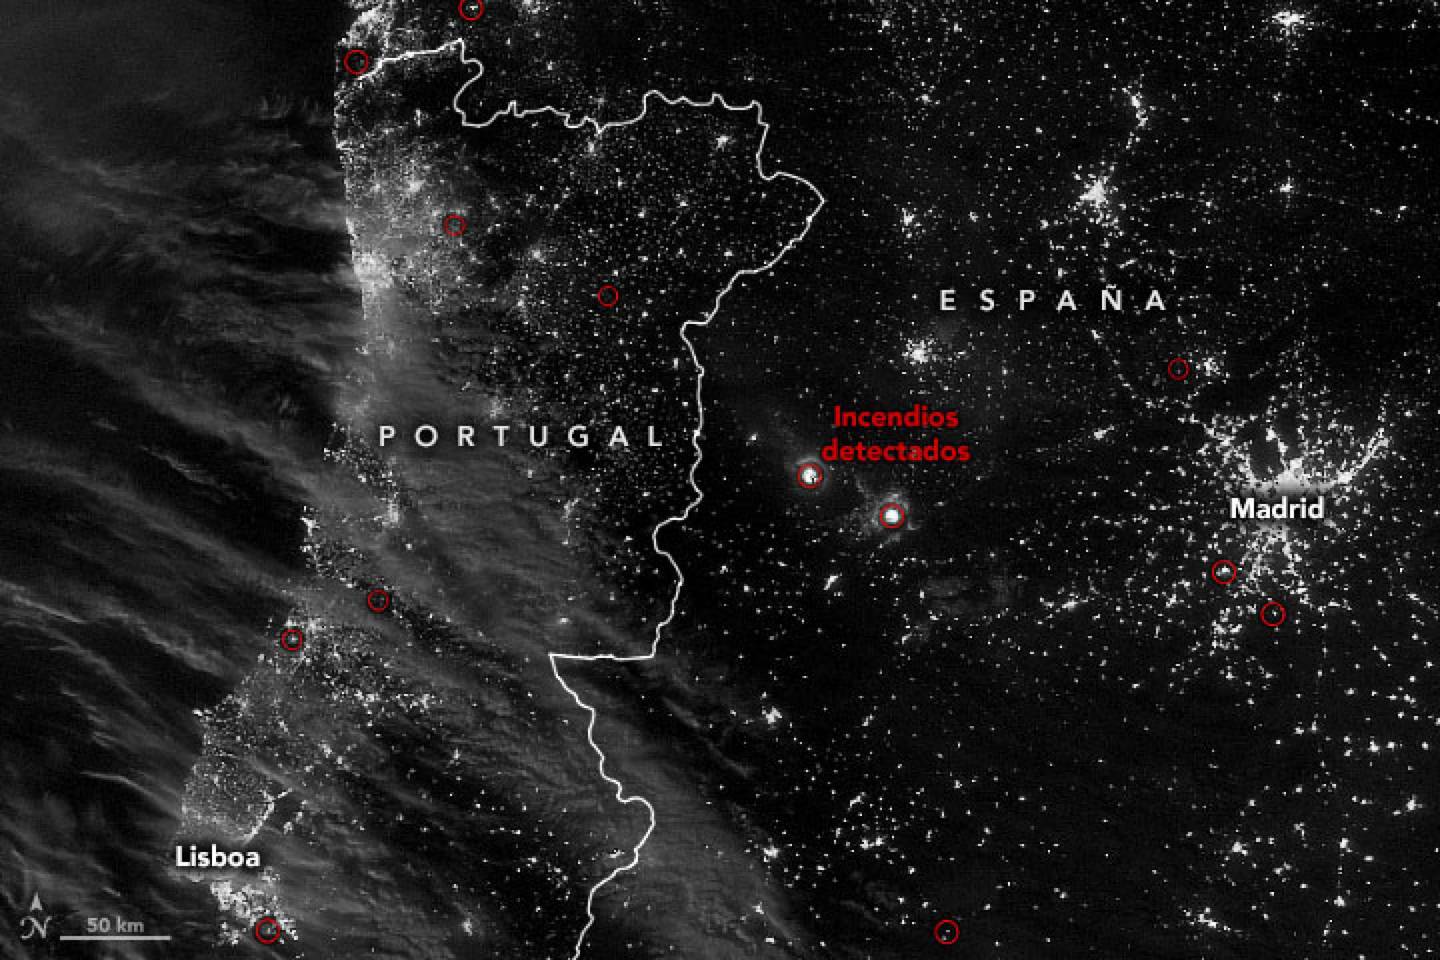 La imagen muestra la ubicación de incendios detectados en Portugal y España, según lo observado por el Conjunto de radiómetros de imágenes en el infrarrojo visible. (NASA)